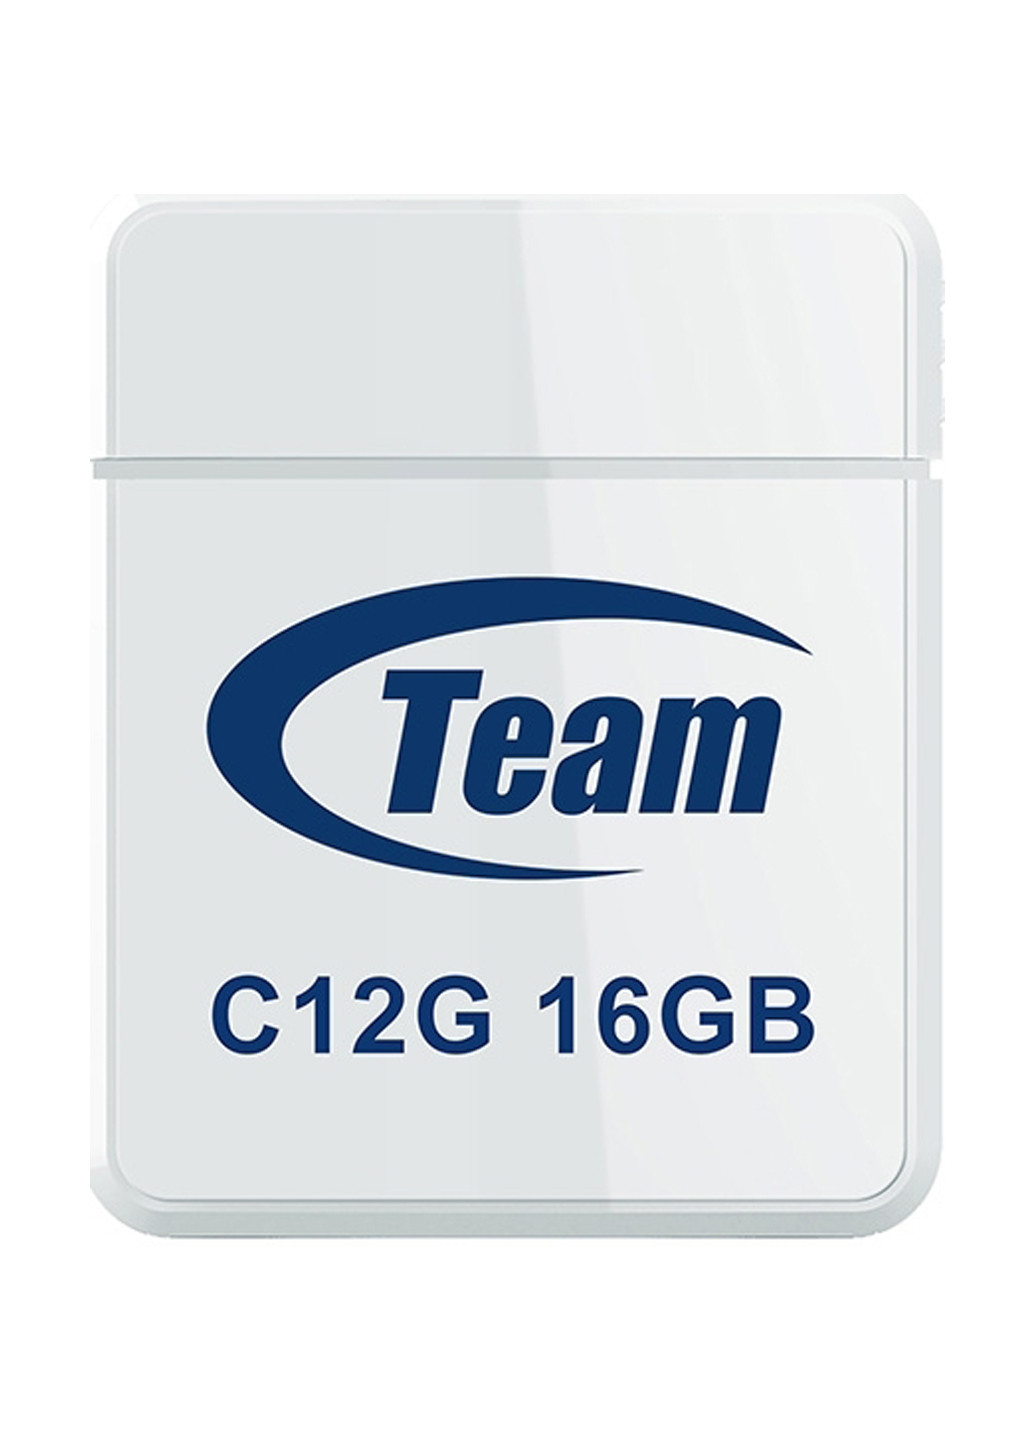 Флеш пам'ять USB C12G 16Gb White (TC12G16GW01) Team флеш память usb team c12g 16gb white (tc12g16gw01) (134201784)